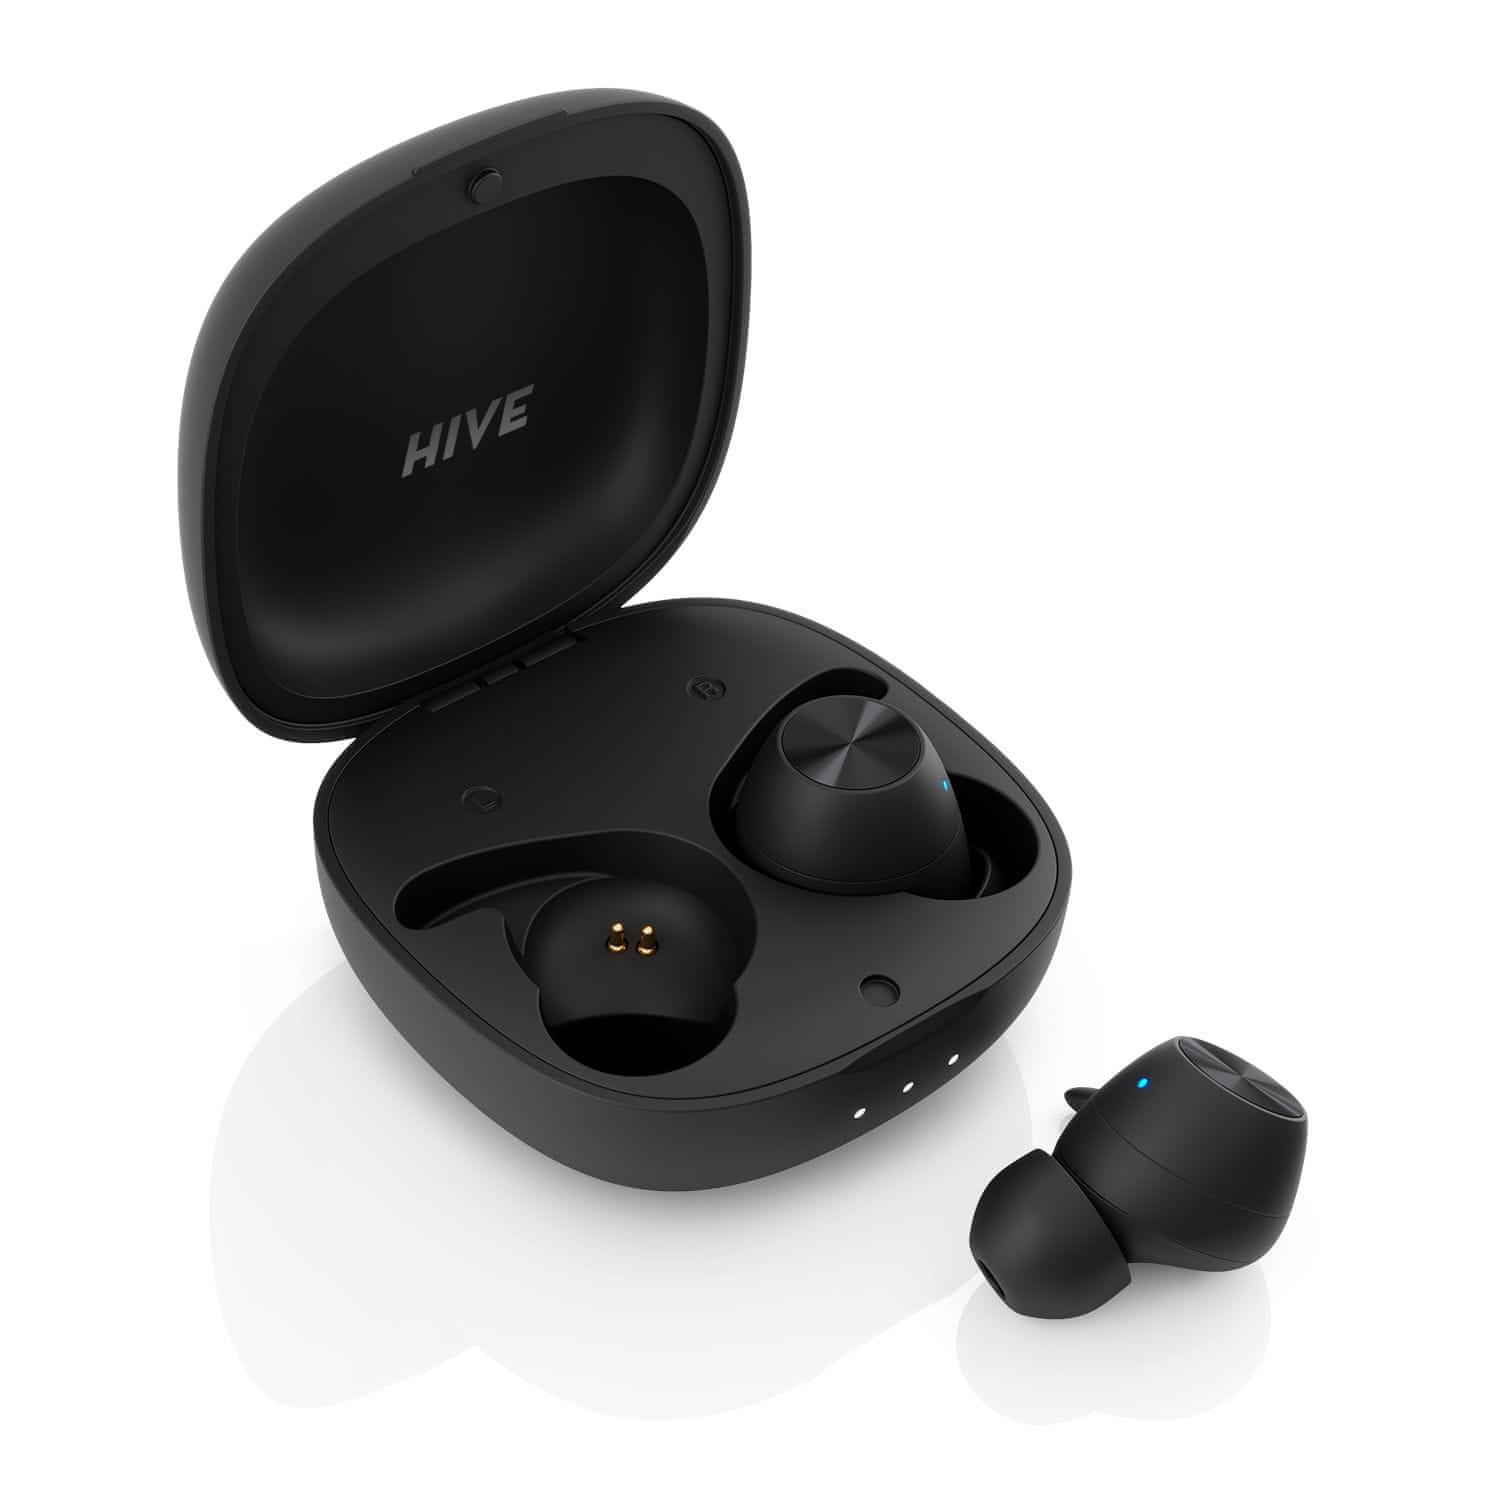  bluetooth přenosná sluchátka niceboy hive pods 3 pro bezdrátová ip55 aac sbc nabíjecí box 33 h provoz celkem vhodná i pro sportovce mikrofon handsfree hlasové ovládání špičkový zvuk 6mm výkonné měniče 